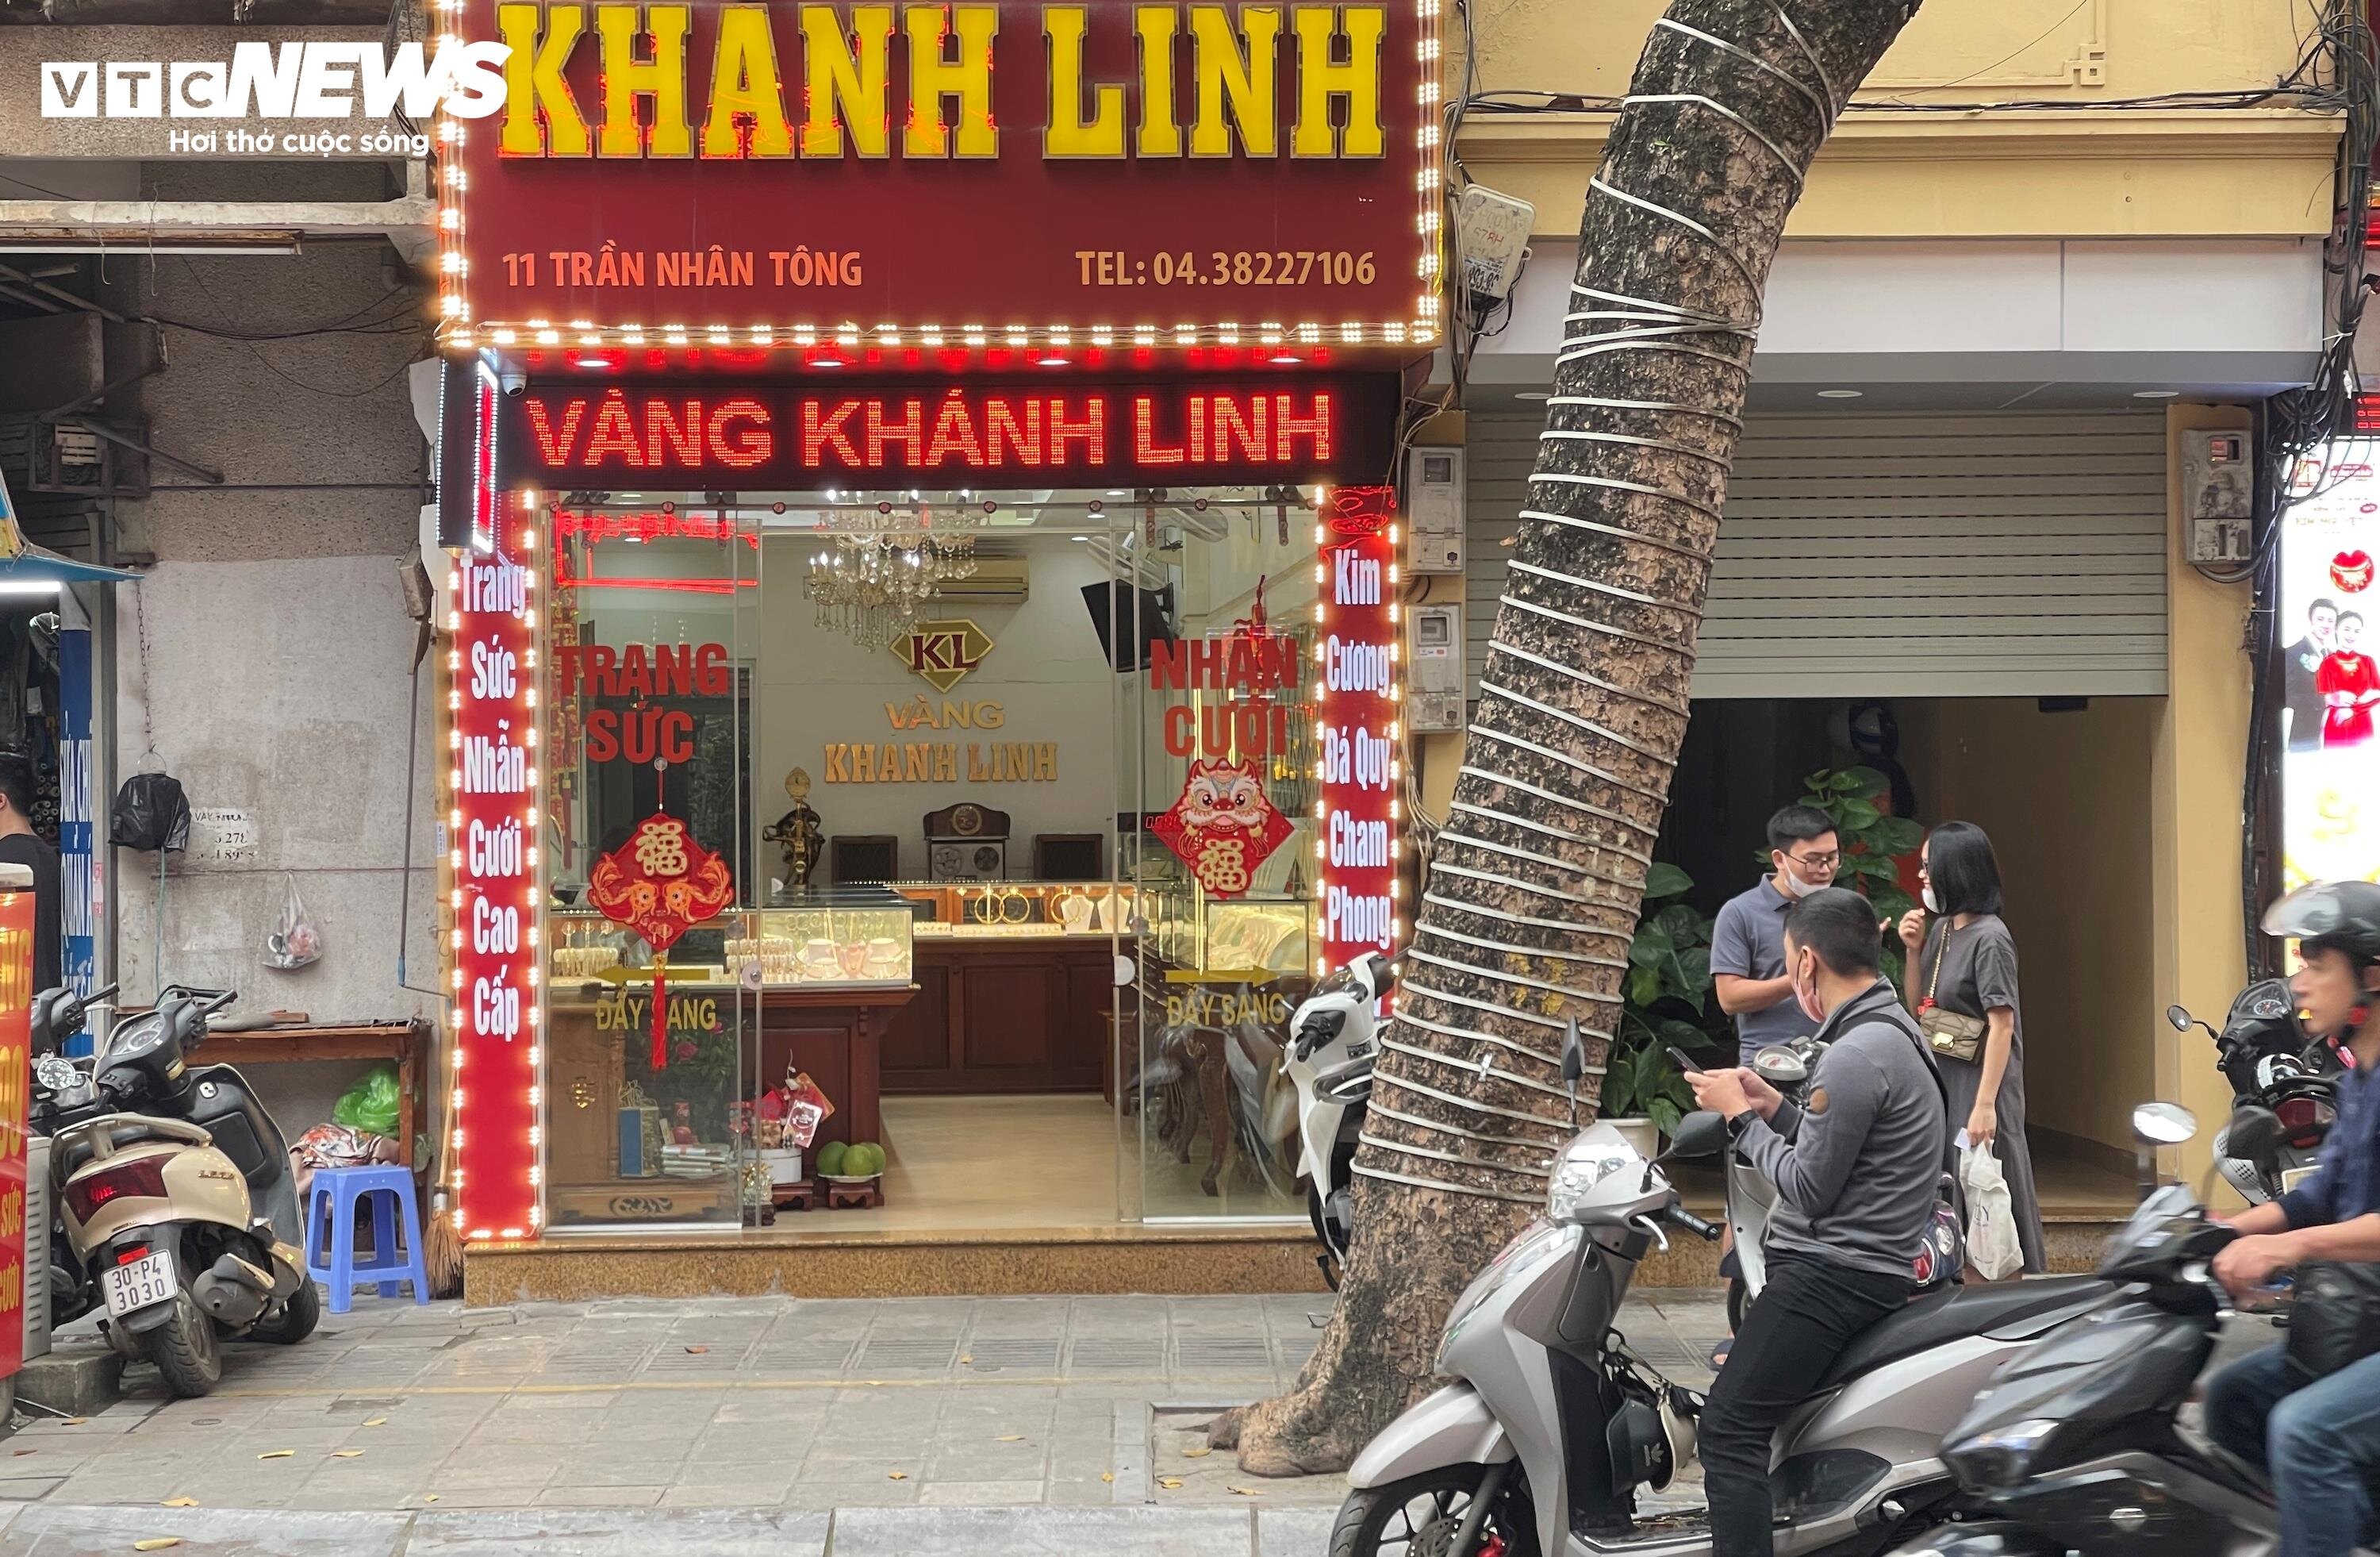 Không ít cửa hàng vàng trên phố Trần Nhân Tông vẫn trong cảnh chờ khách ghé thăm, khác hẳn cảnh chen lấn, đông đúc ở những nơi khác.